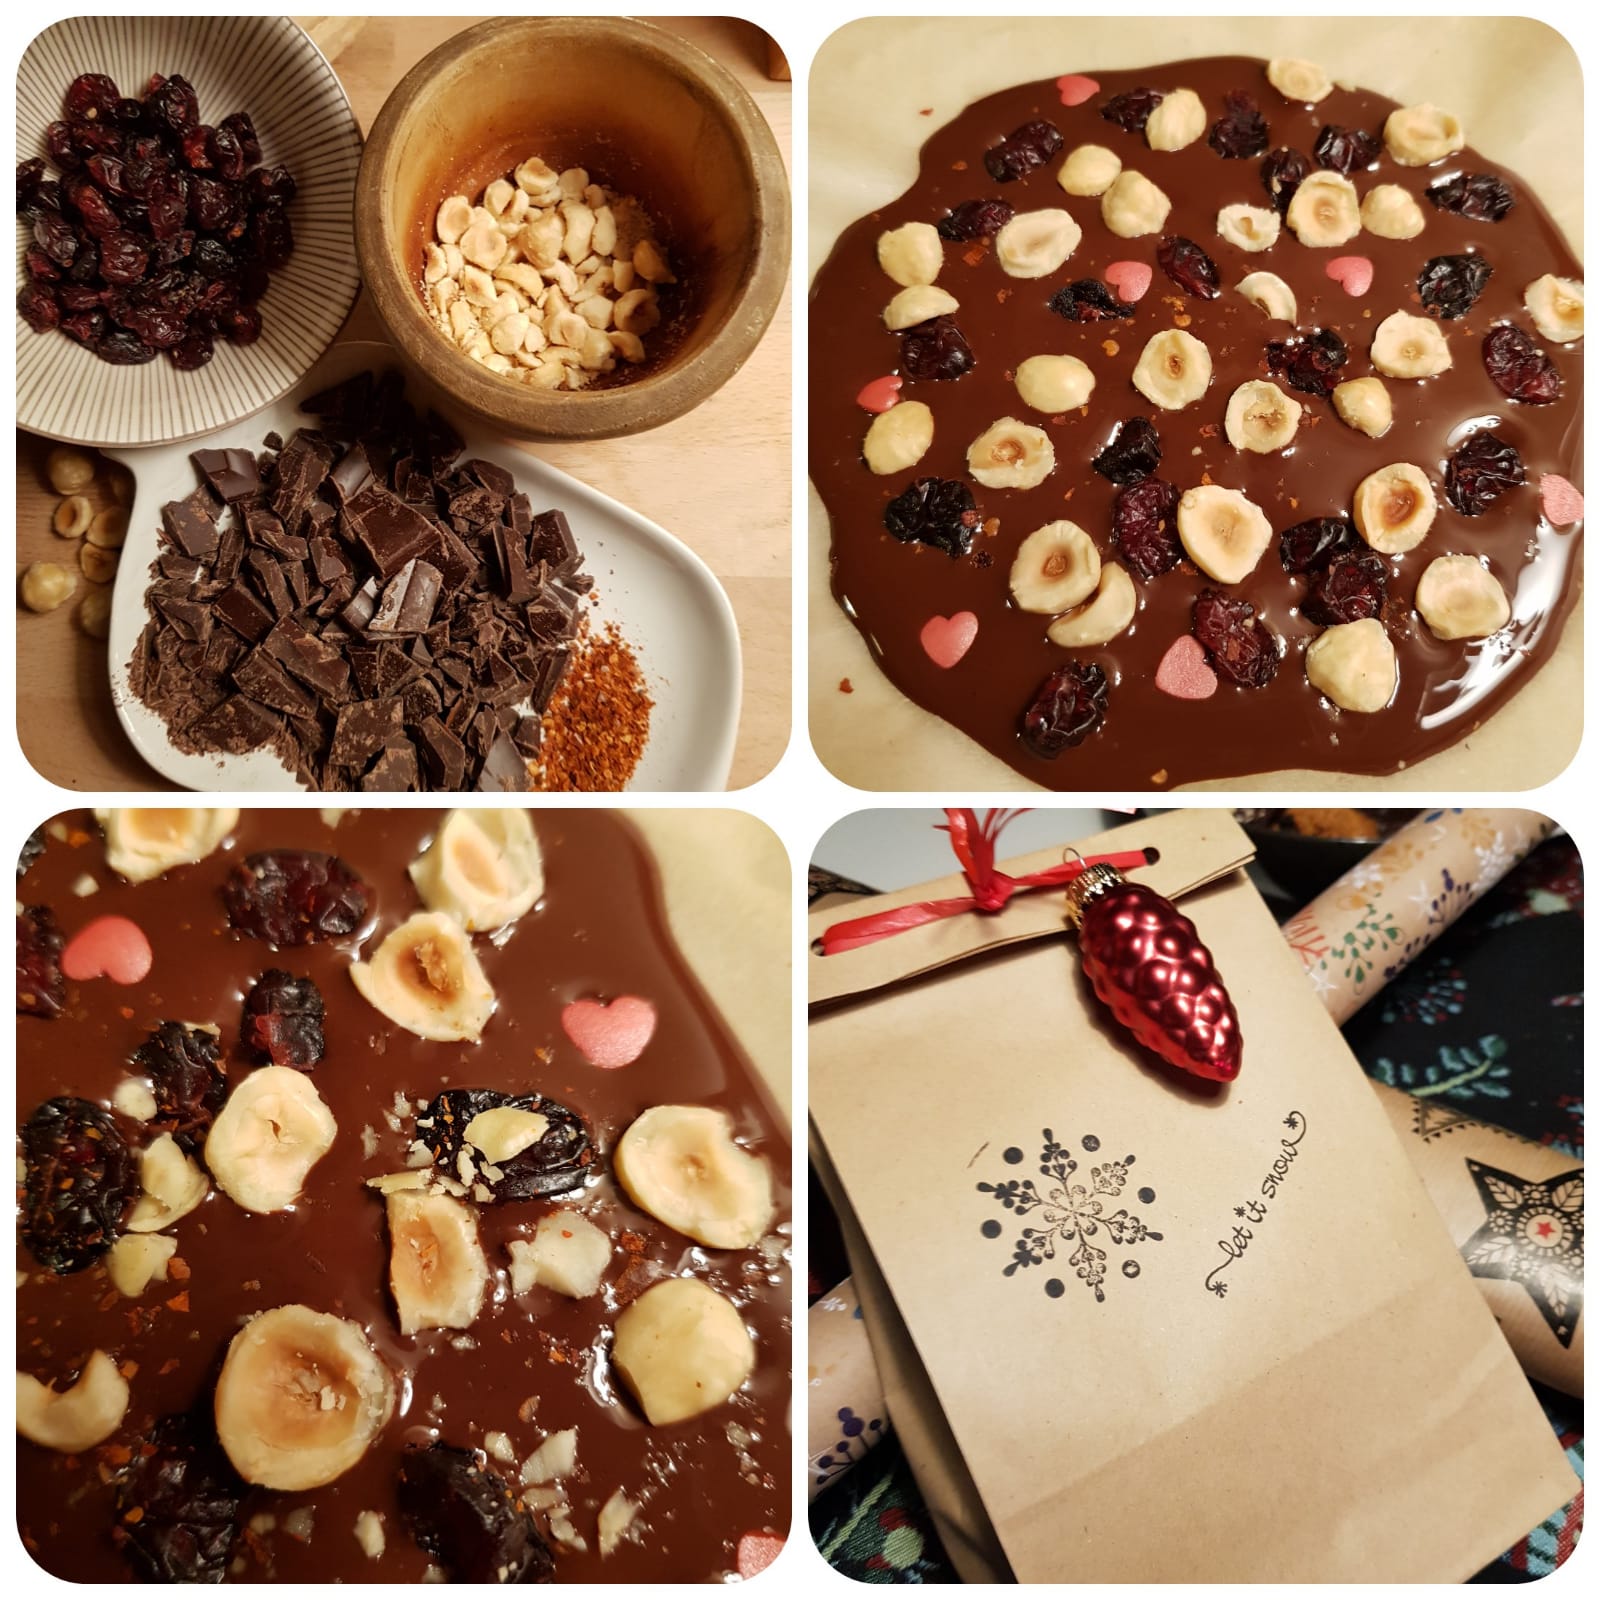 Geschenke aus der Küche - Bruchschokolade mit Nüssen und Trockenfrüchten